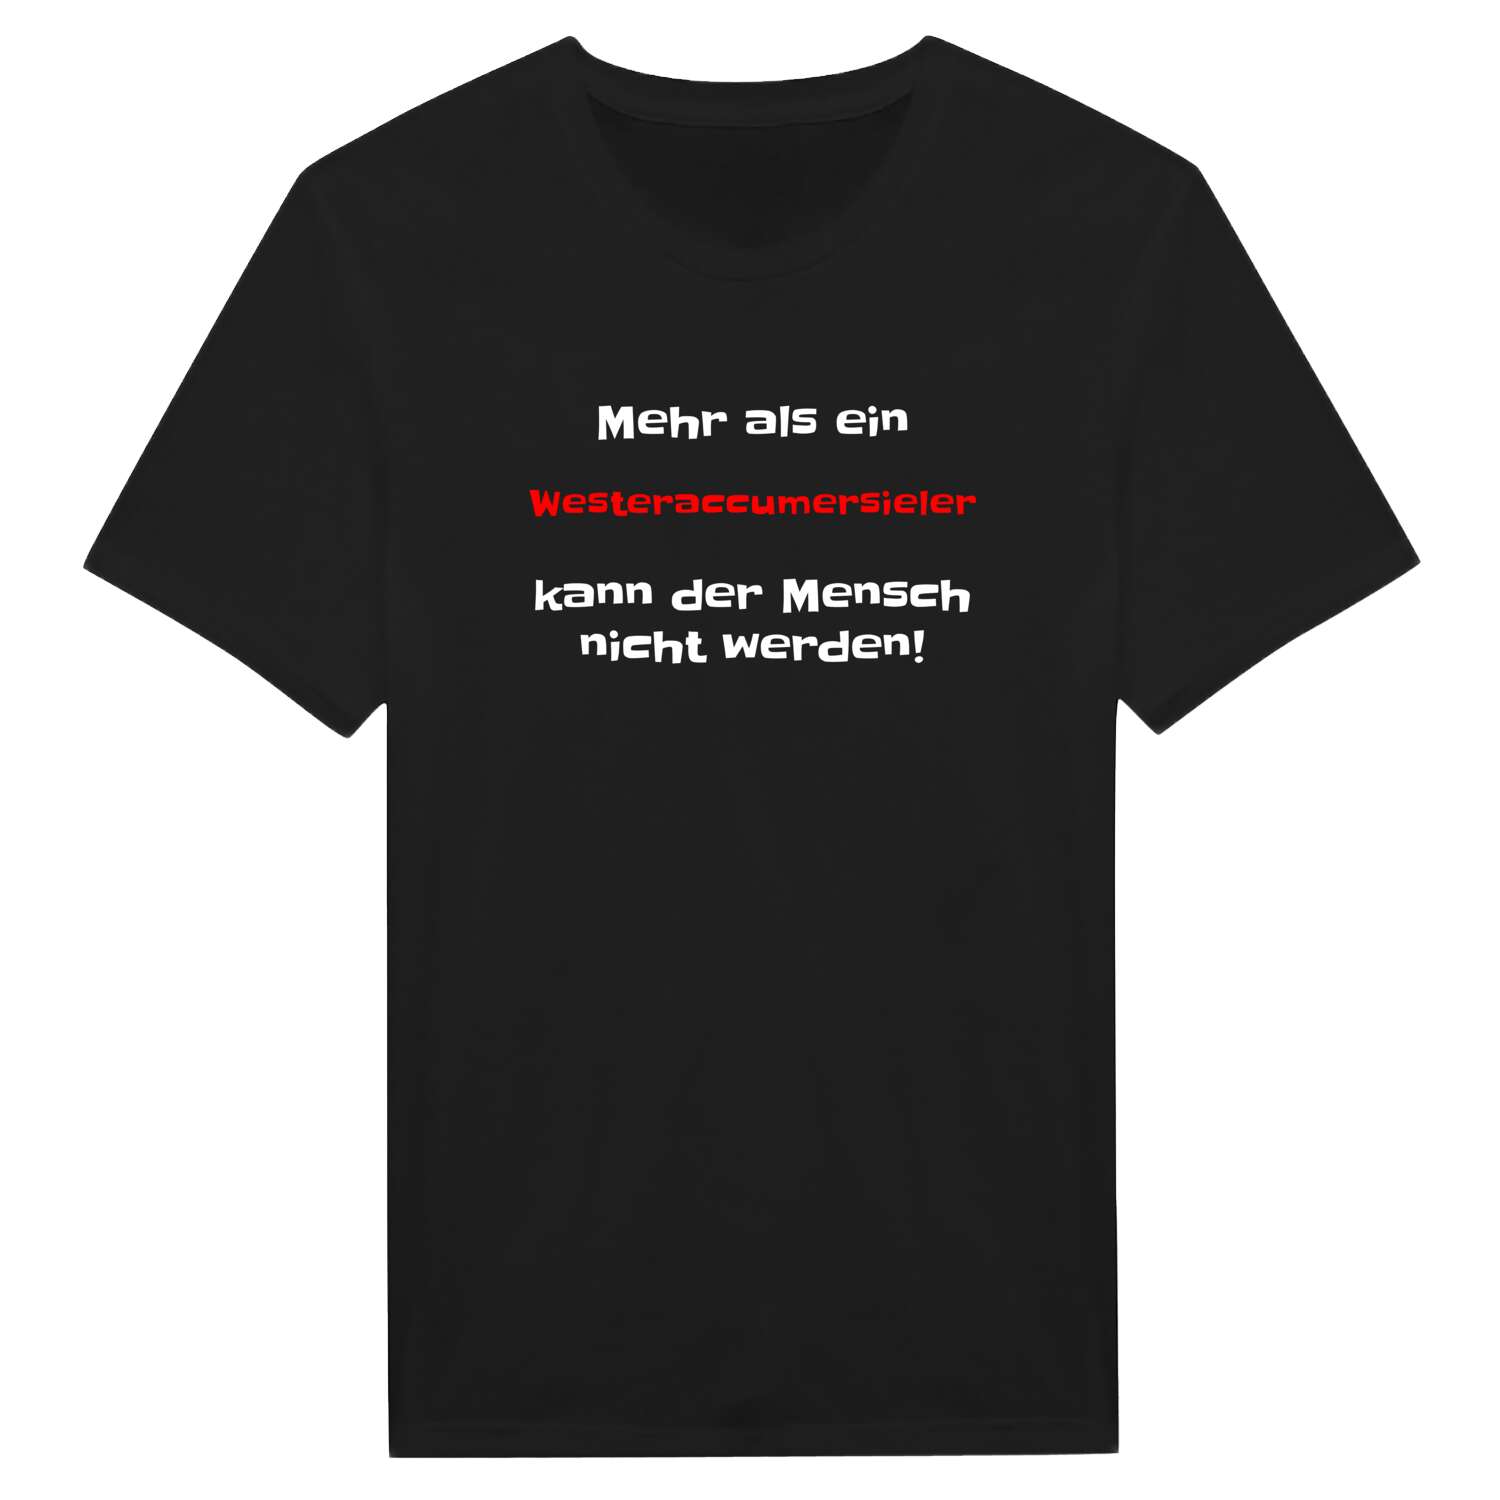 Westeraccumersiel T-Shirt »Mehr als ein«